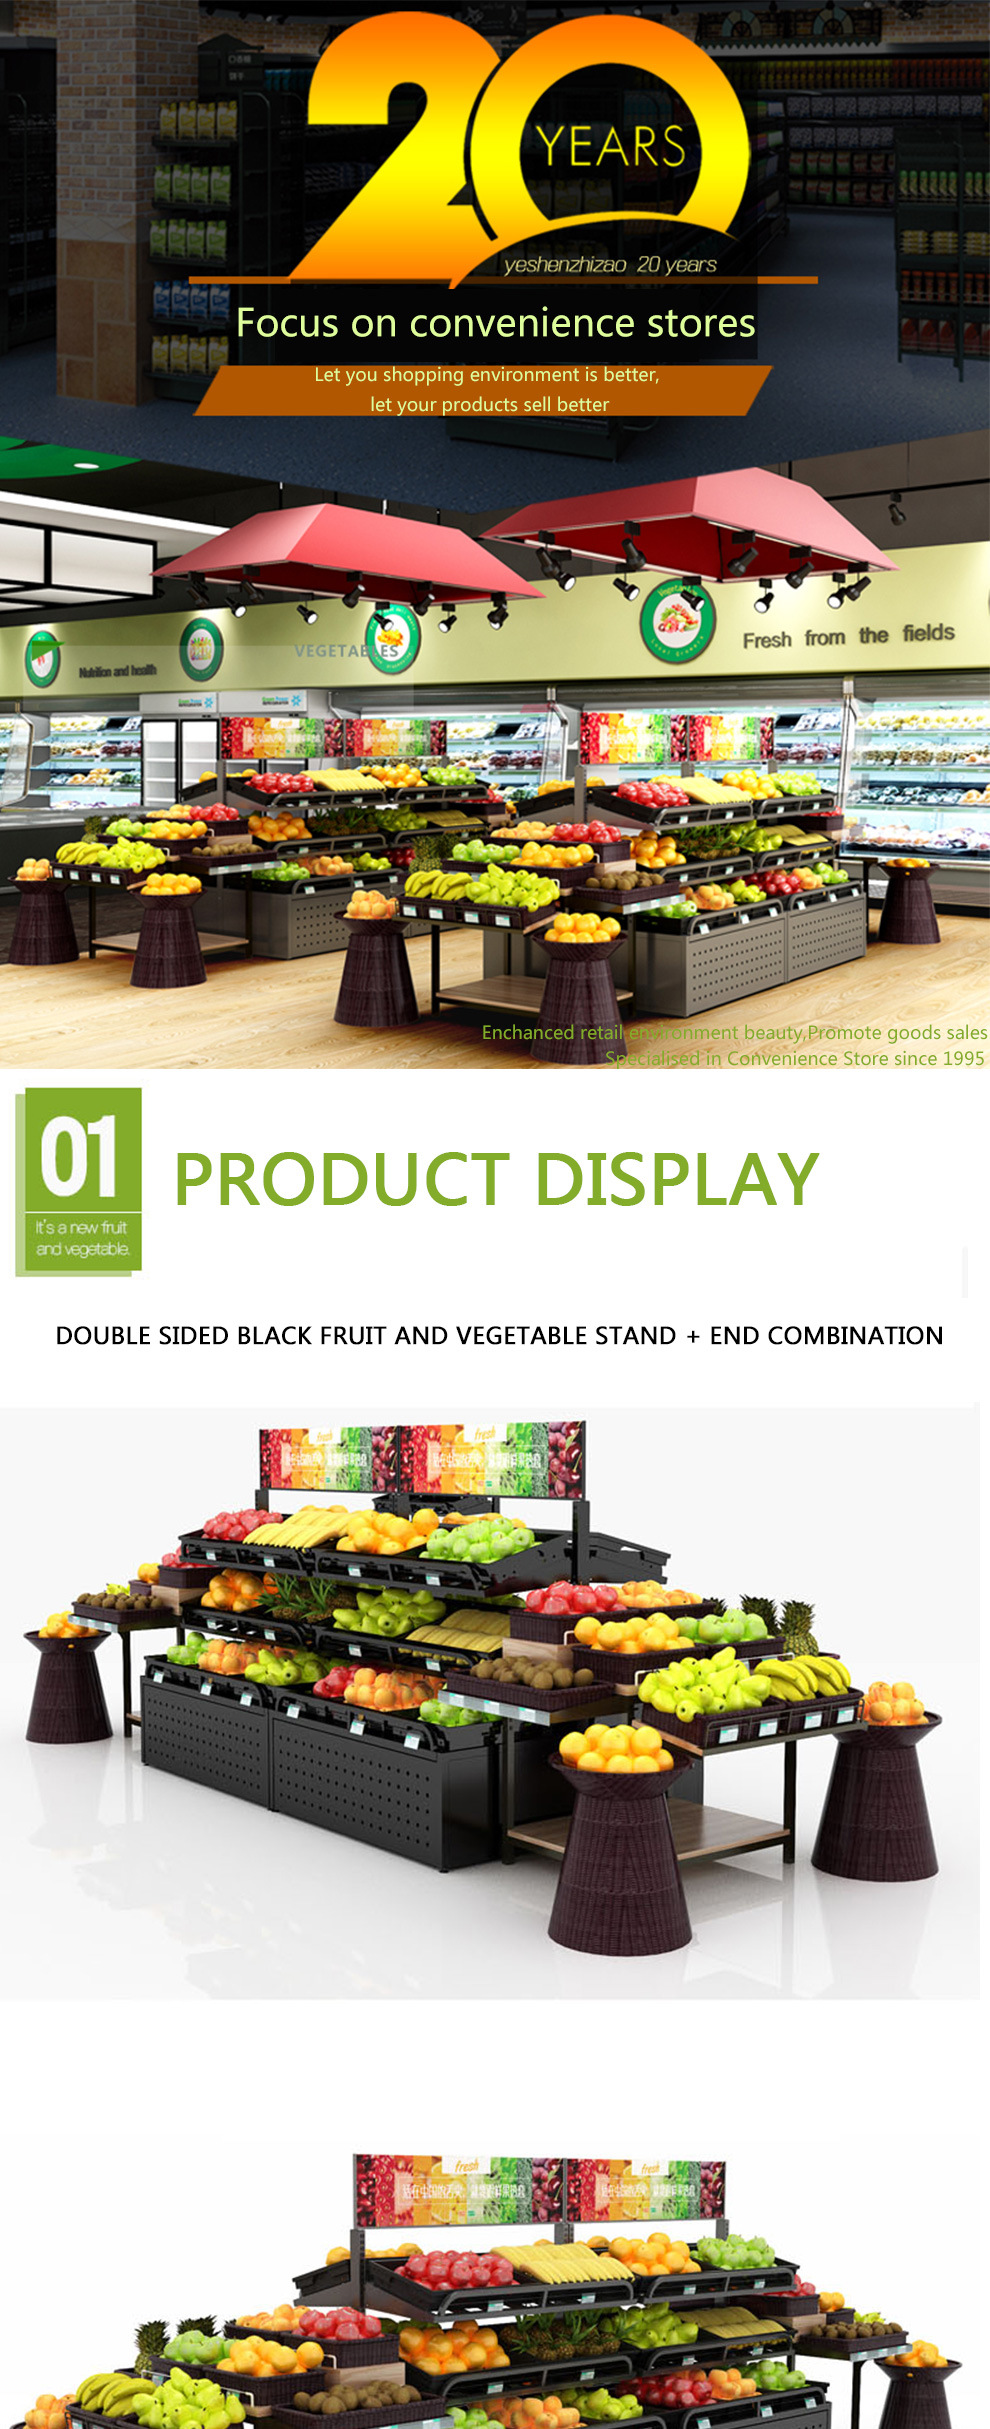 Steel Display Shelves Supermarket Vegetable and Fruit Display Rack